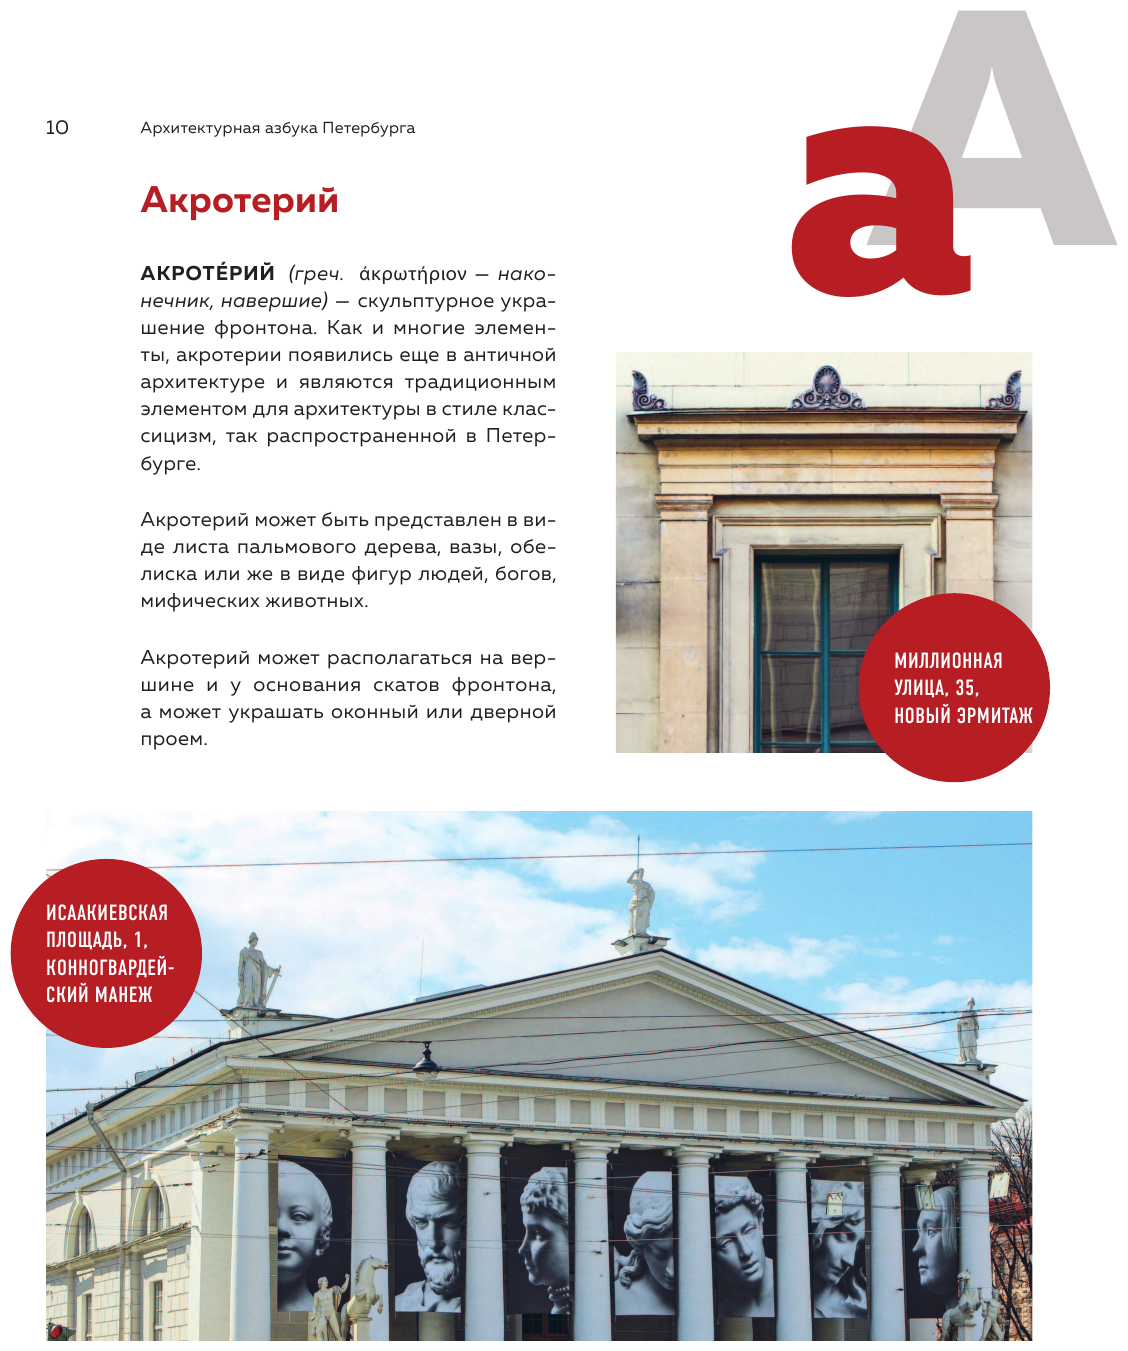 Архитектурная азбука Петербурга: от акротерия до яблока - фото №11